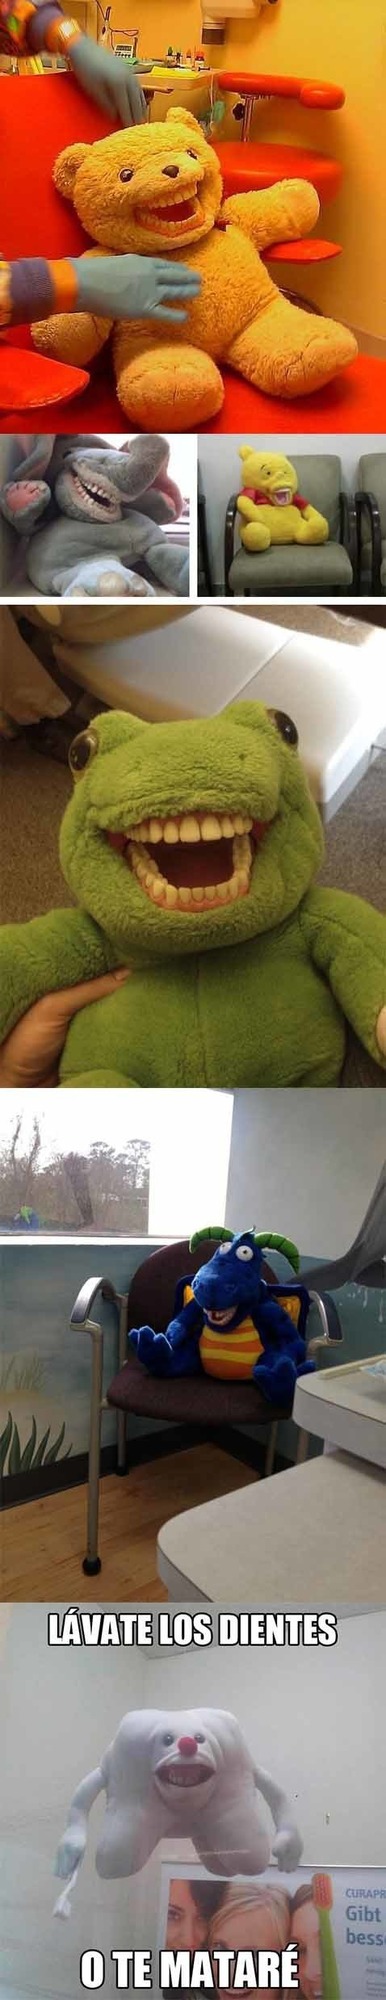 Con dientes es aterrador - meme